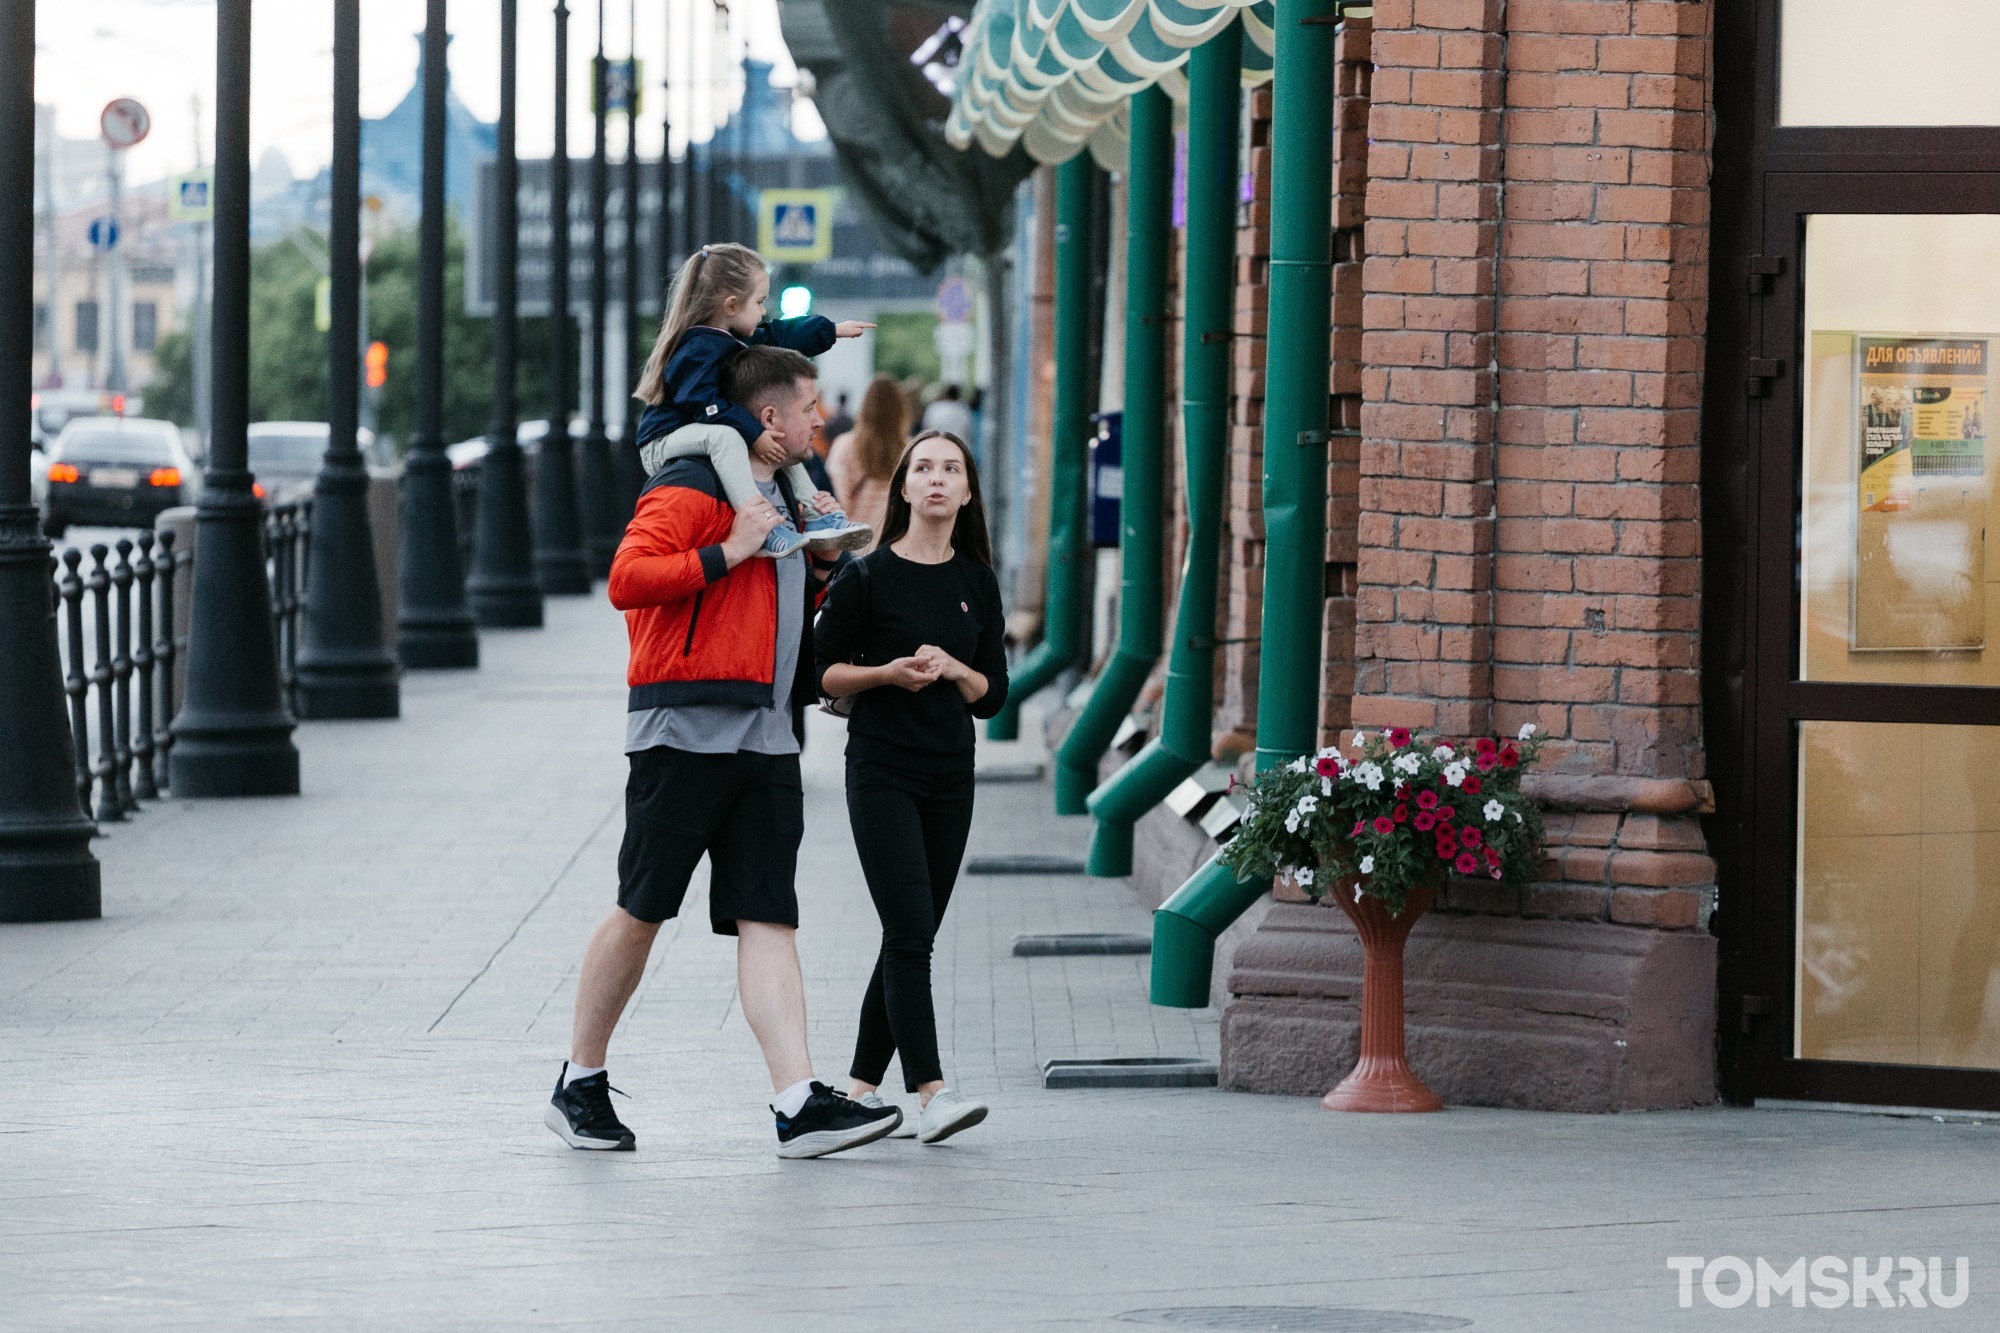 Прогулки по городу, посиделки в сквере и хорошее настроение: фоторепортаж с улиц Томска